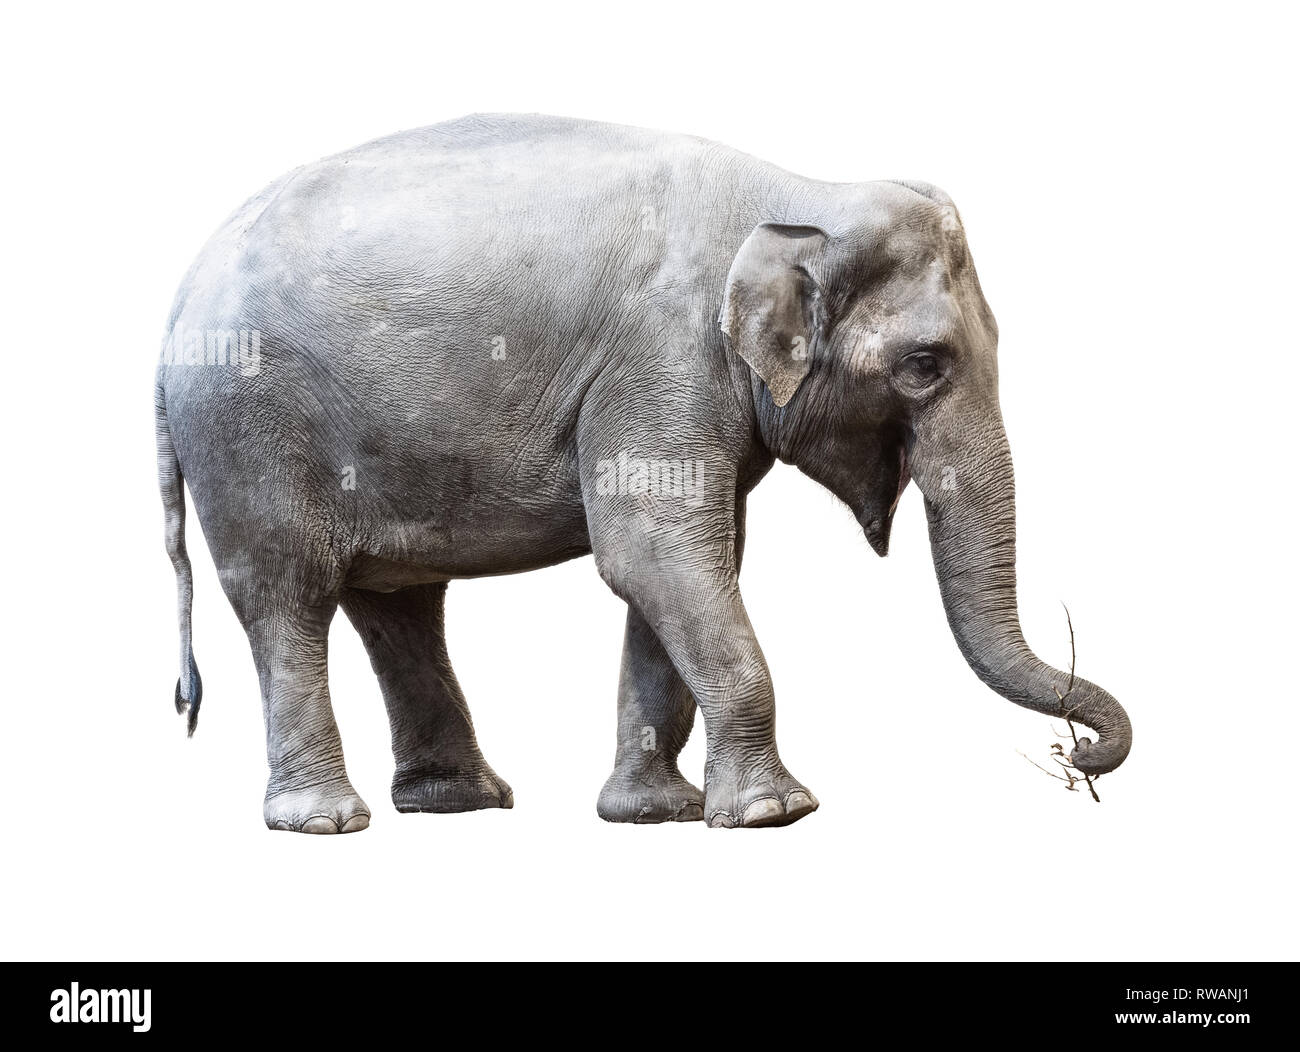 Elephant sosteniendo un palo sobre fondo blanco. Foto de stock